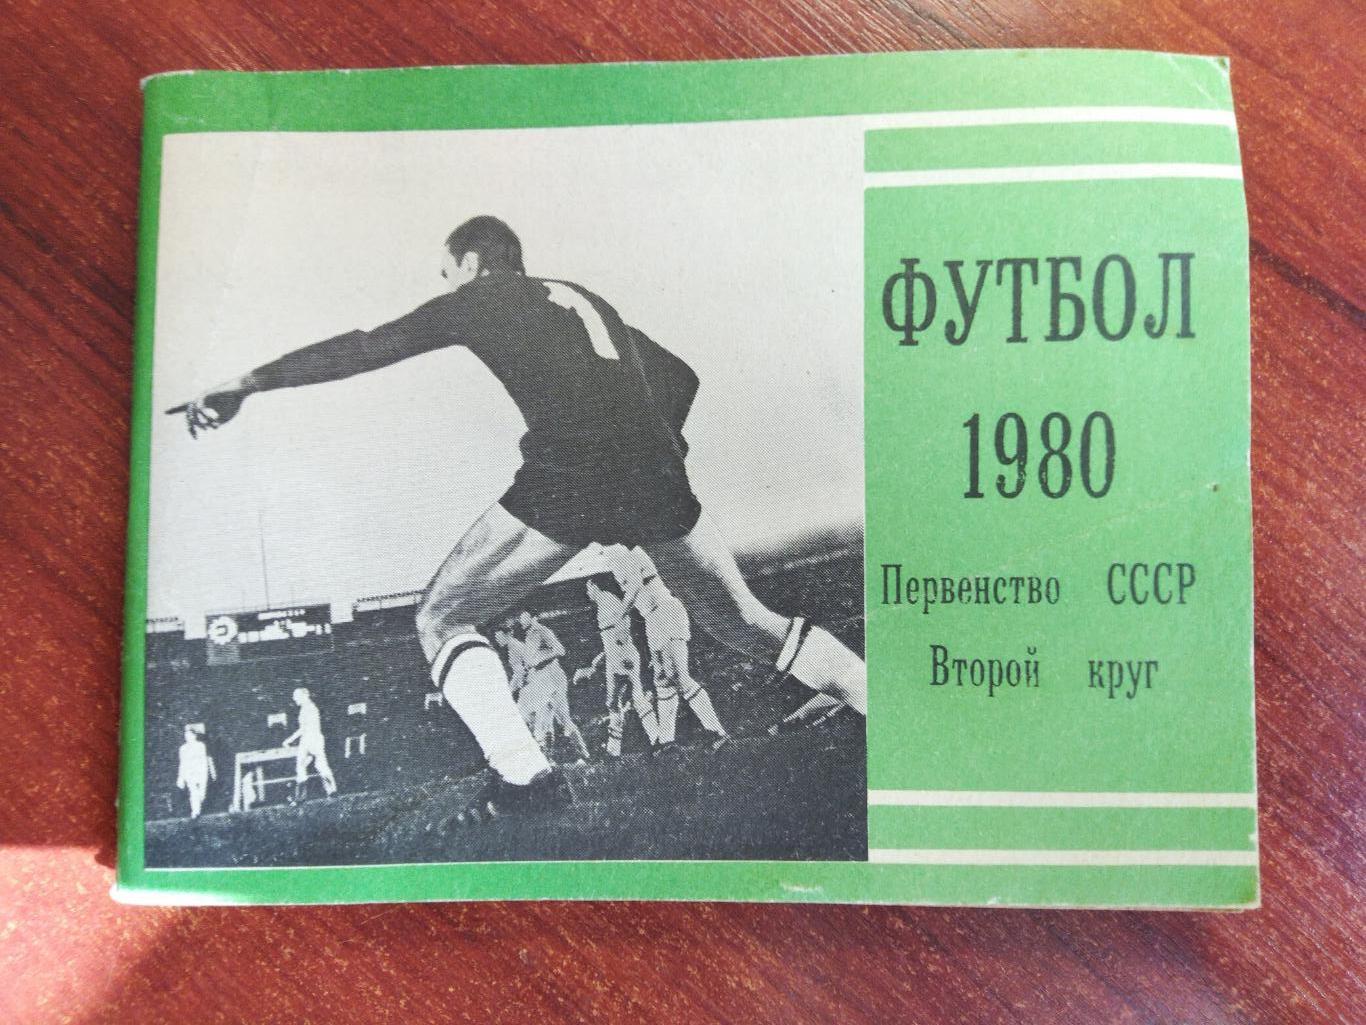 Справочник-календарь Футбол чемпионат СССР 1980 второй круг